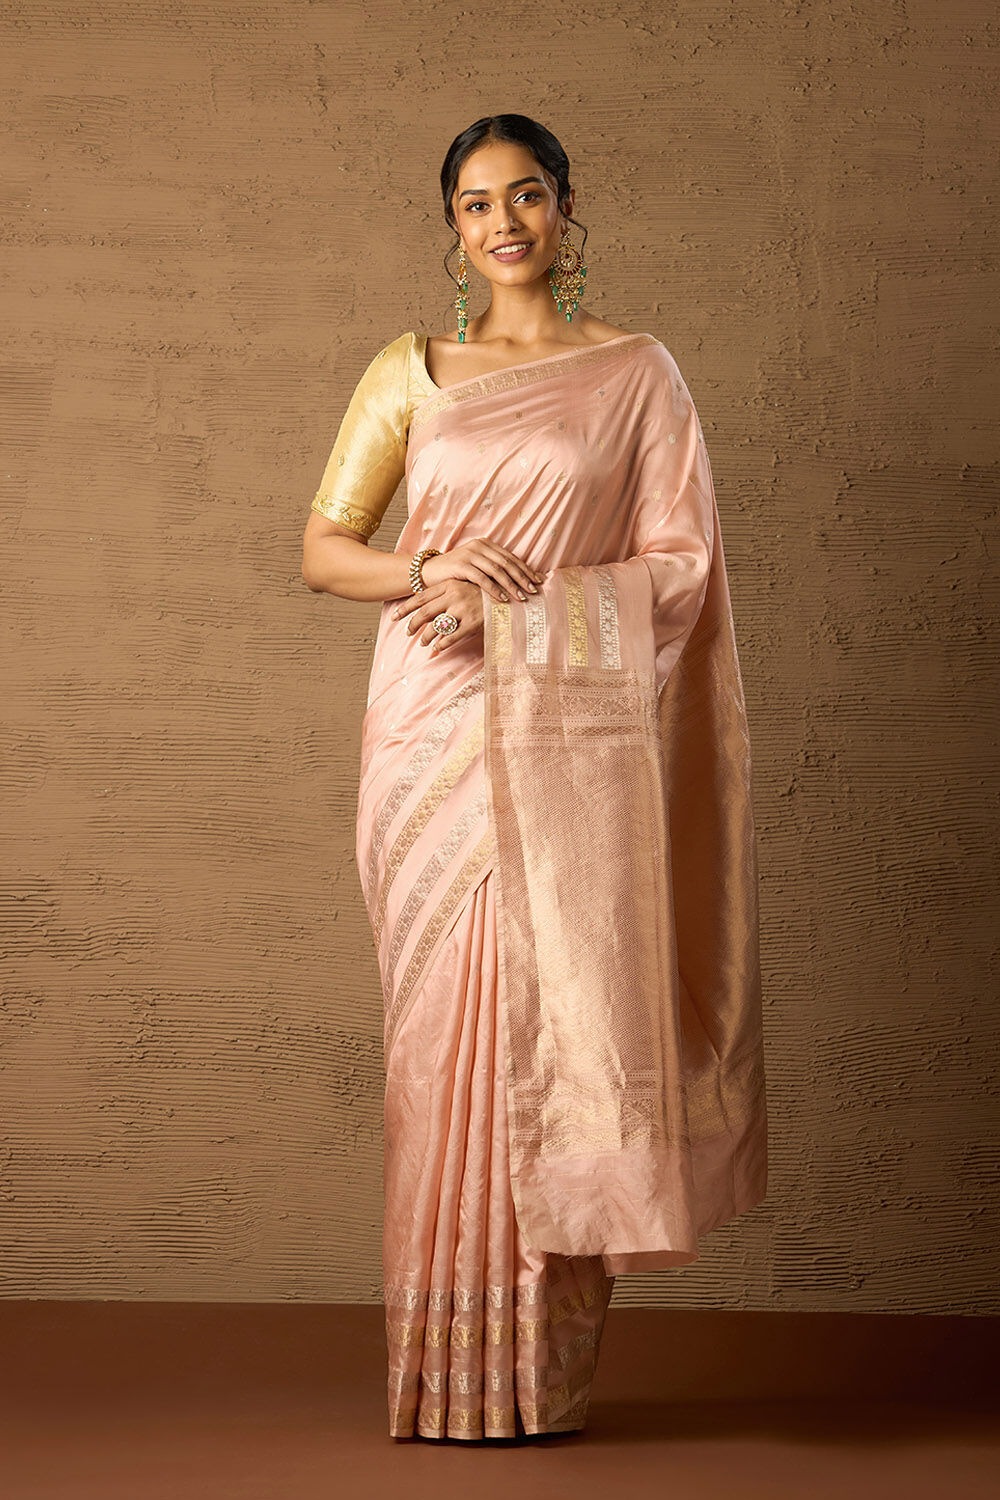 Handloom Cotton Sarees | Stylish sarees, Saree designs, Saree draping styles